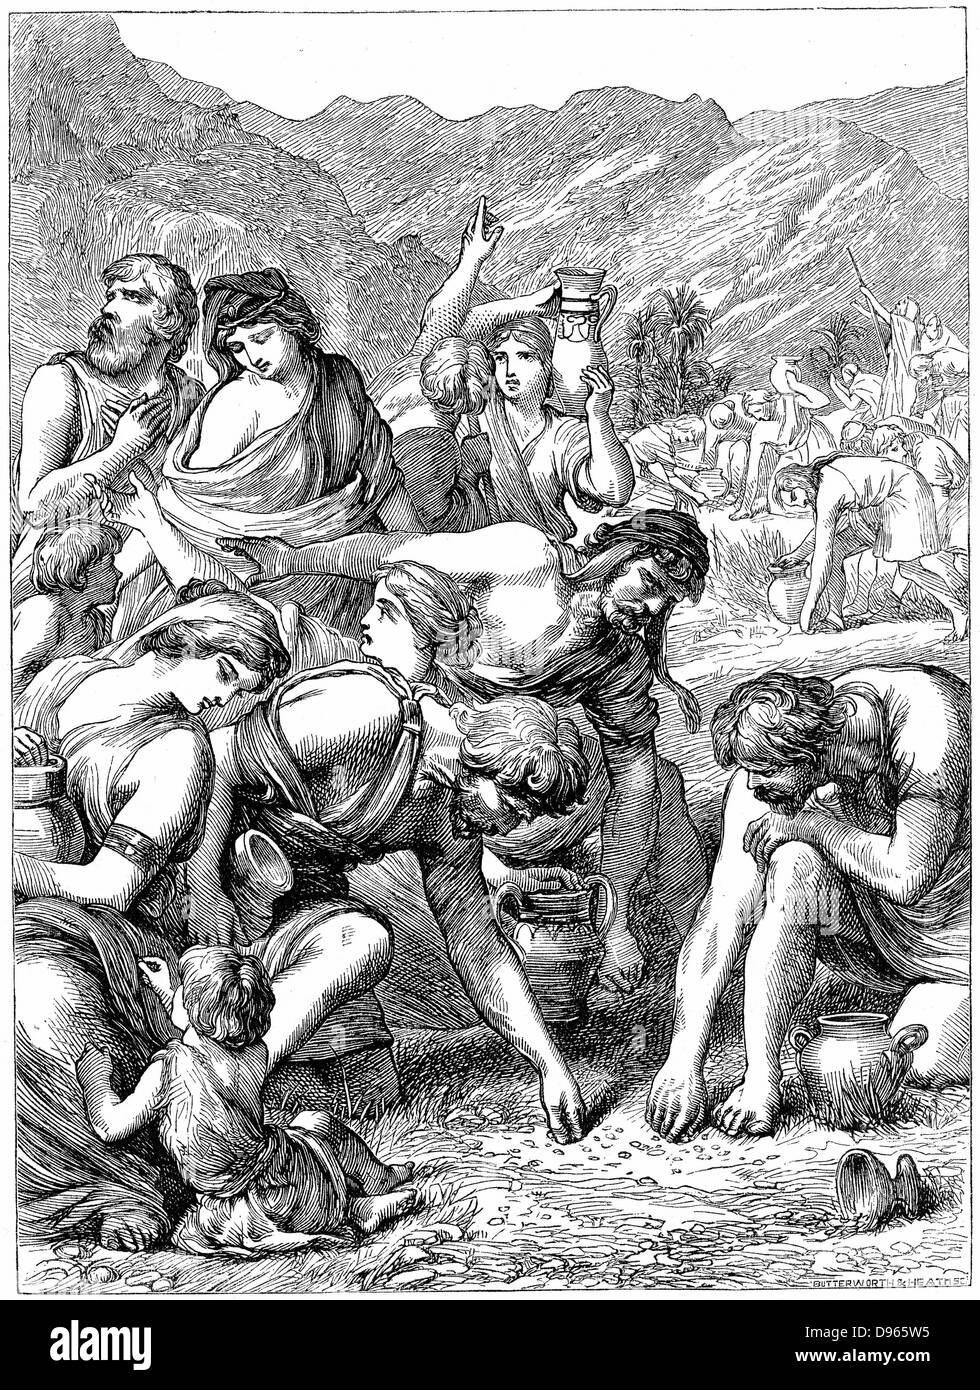 Gli Israeliti nel deserto per la raccolta della manna che è sceso dal cielo." La bibbia": Neemia 9.15. Incisione su legno 1869. Foto Stock